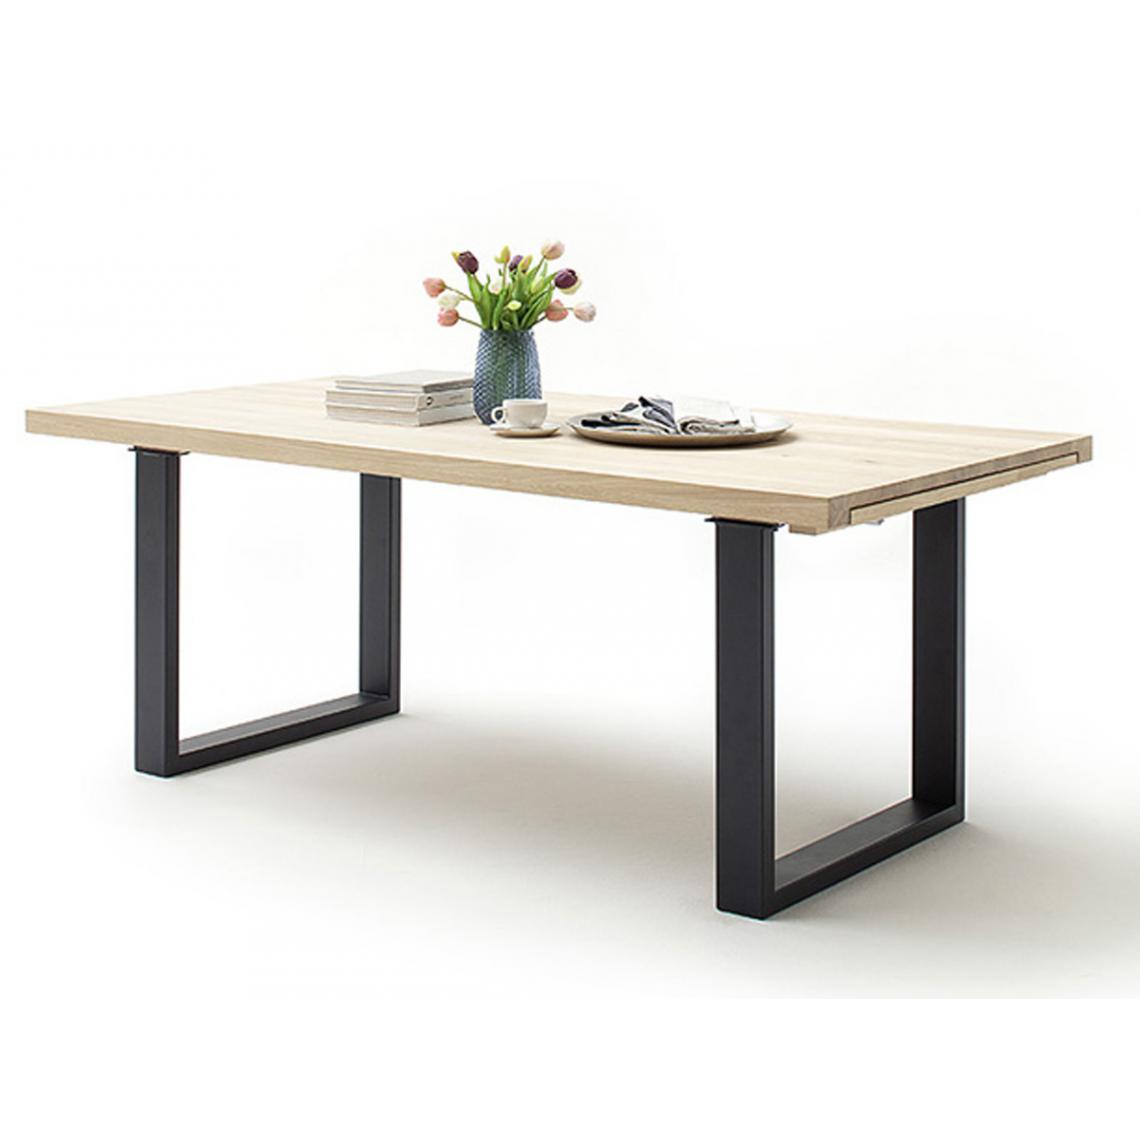 Pegane - Table à manger extensible en chêne blanchi massif huilé / anthracite - L.180-280 x H.77 x P.100 cm - Tables à manger